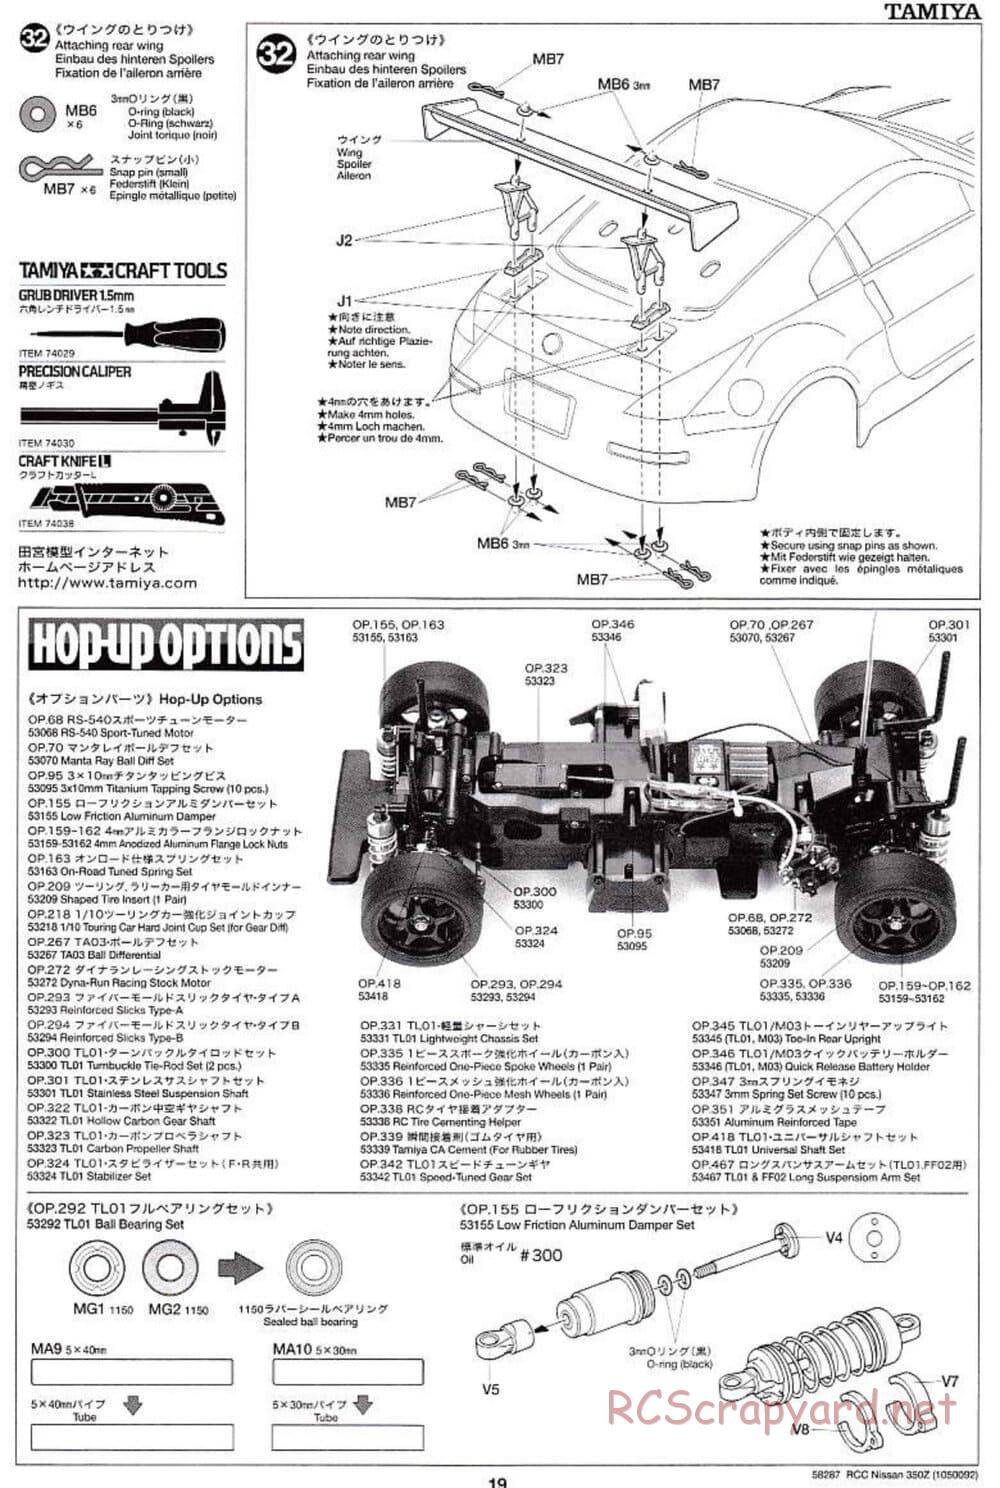 Tamiya - Nissan 350Z - TL-01 Chassis - Manual - Page 19